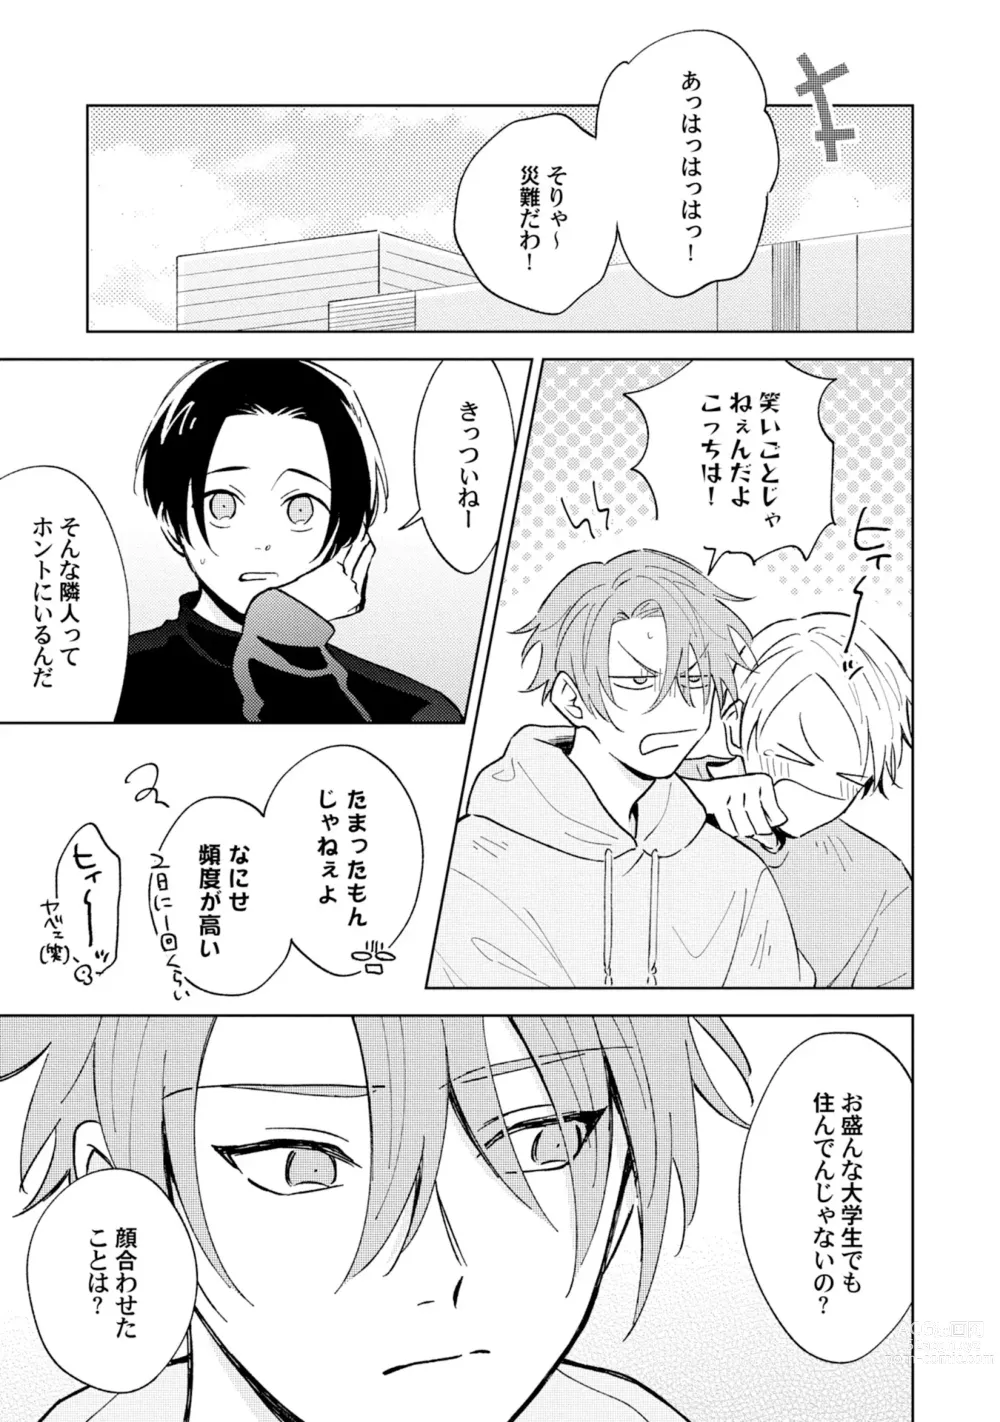 Page 11 of manga Toho 3-byou no Trouble Love Room 1